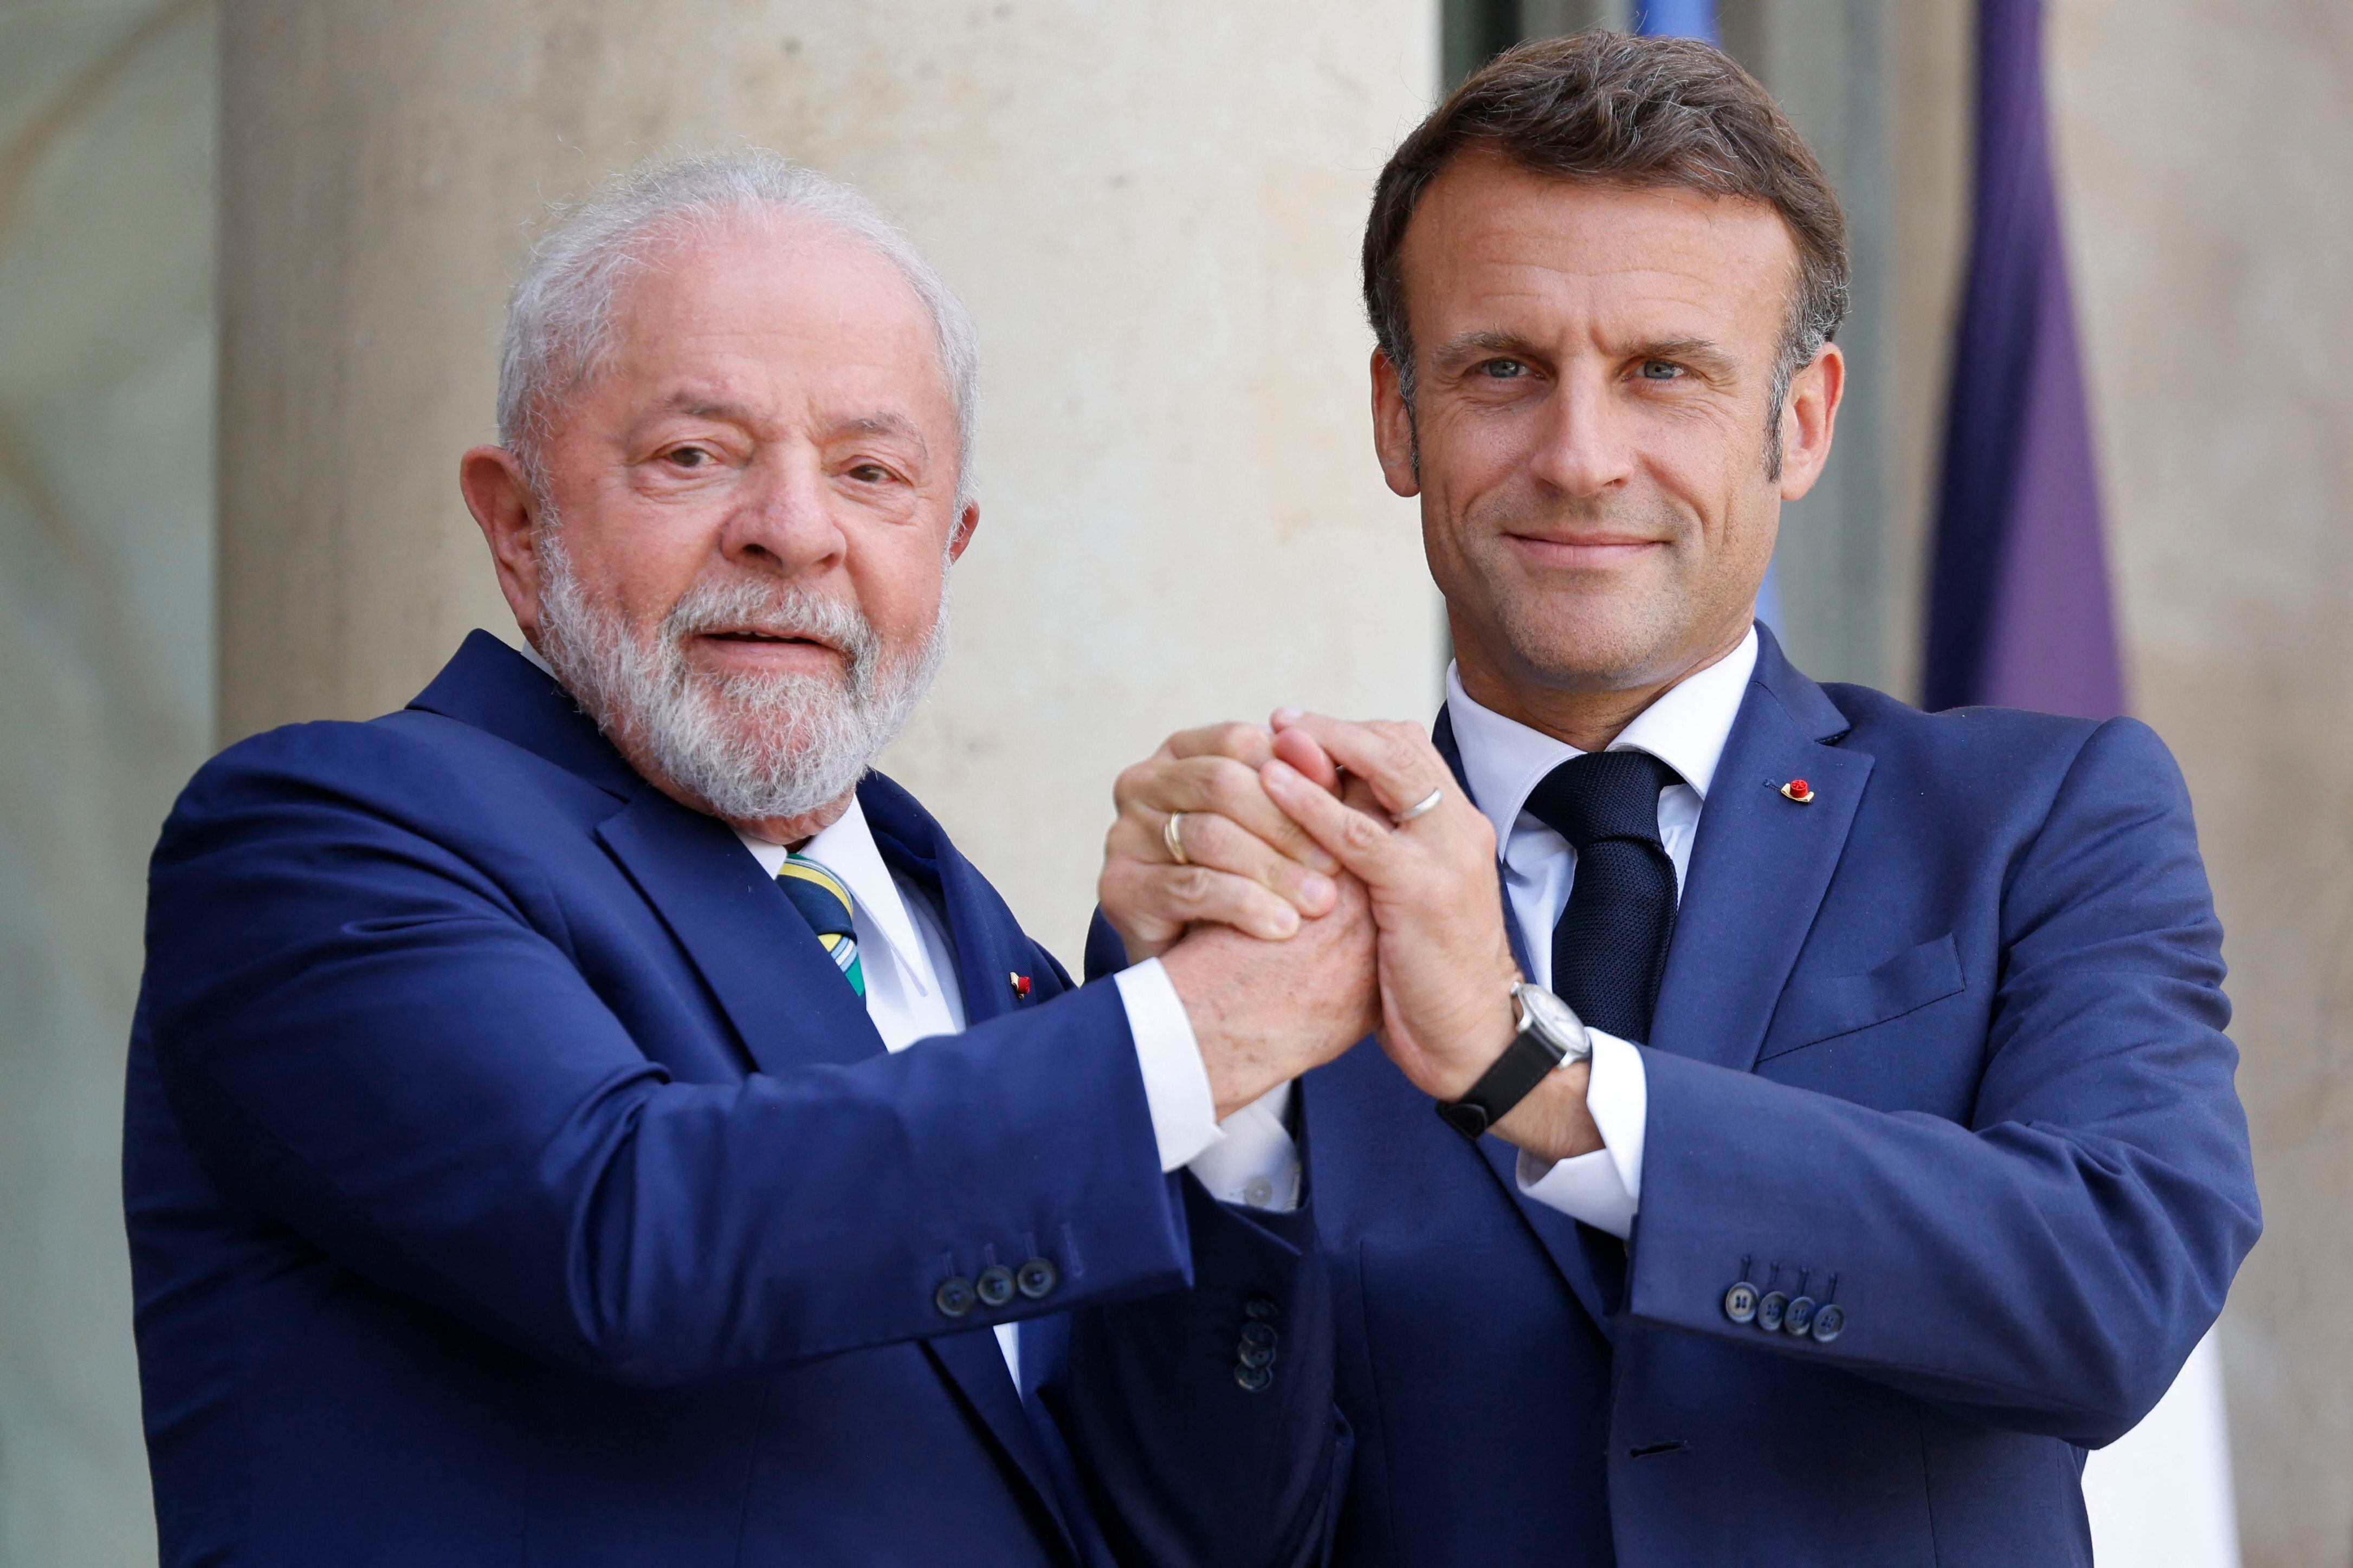 Emmanuel Macron y Luiz Inácio Lula da Silva se reunirán en Belém para dar inicio a una visita crucial para ambas naciones.